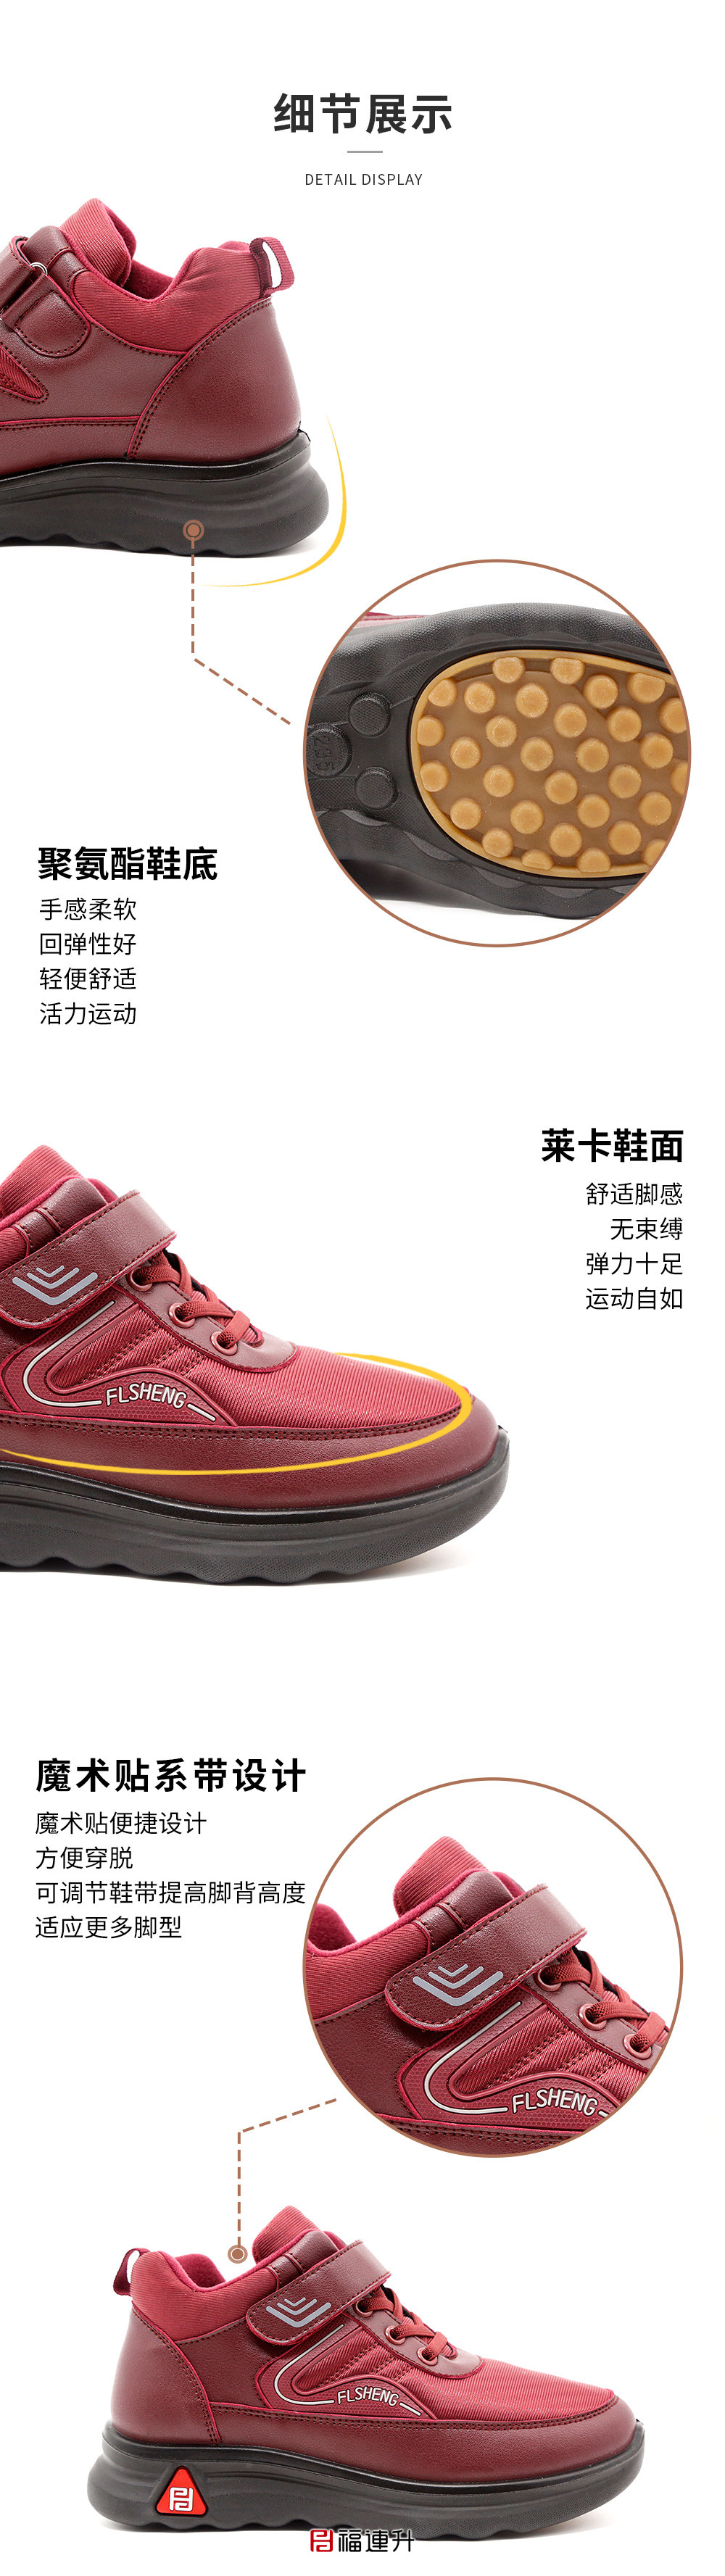 福連升2020冬季新款軟彈舒適防滑保暖波紋松糕底健步鞋圖片